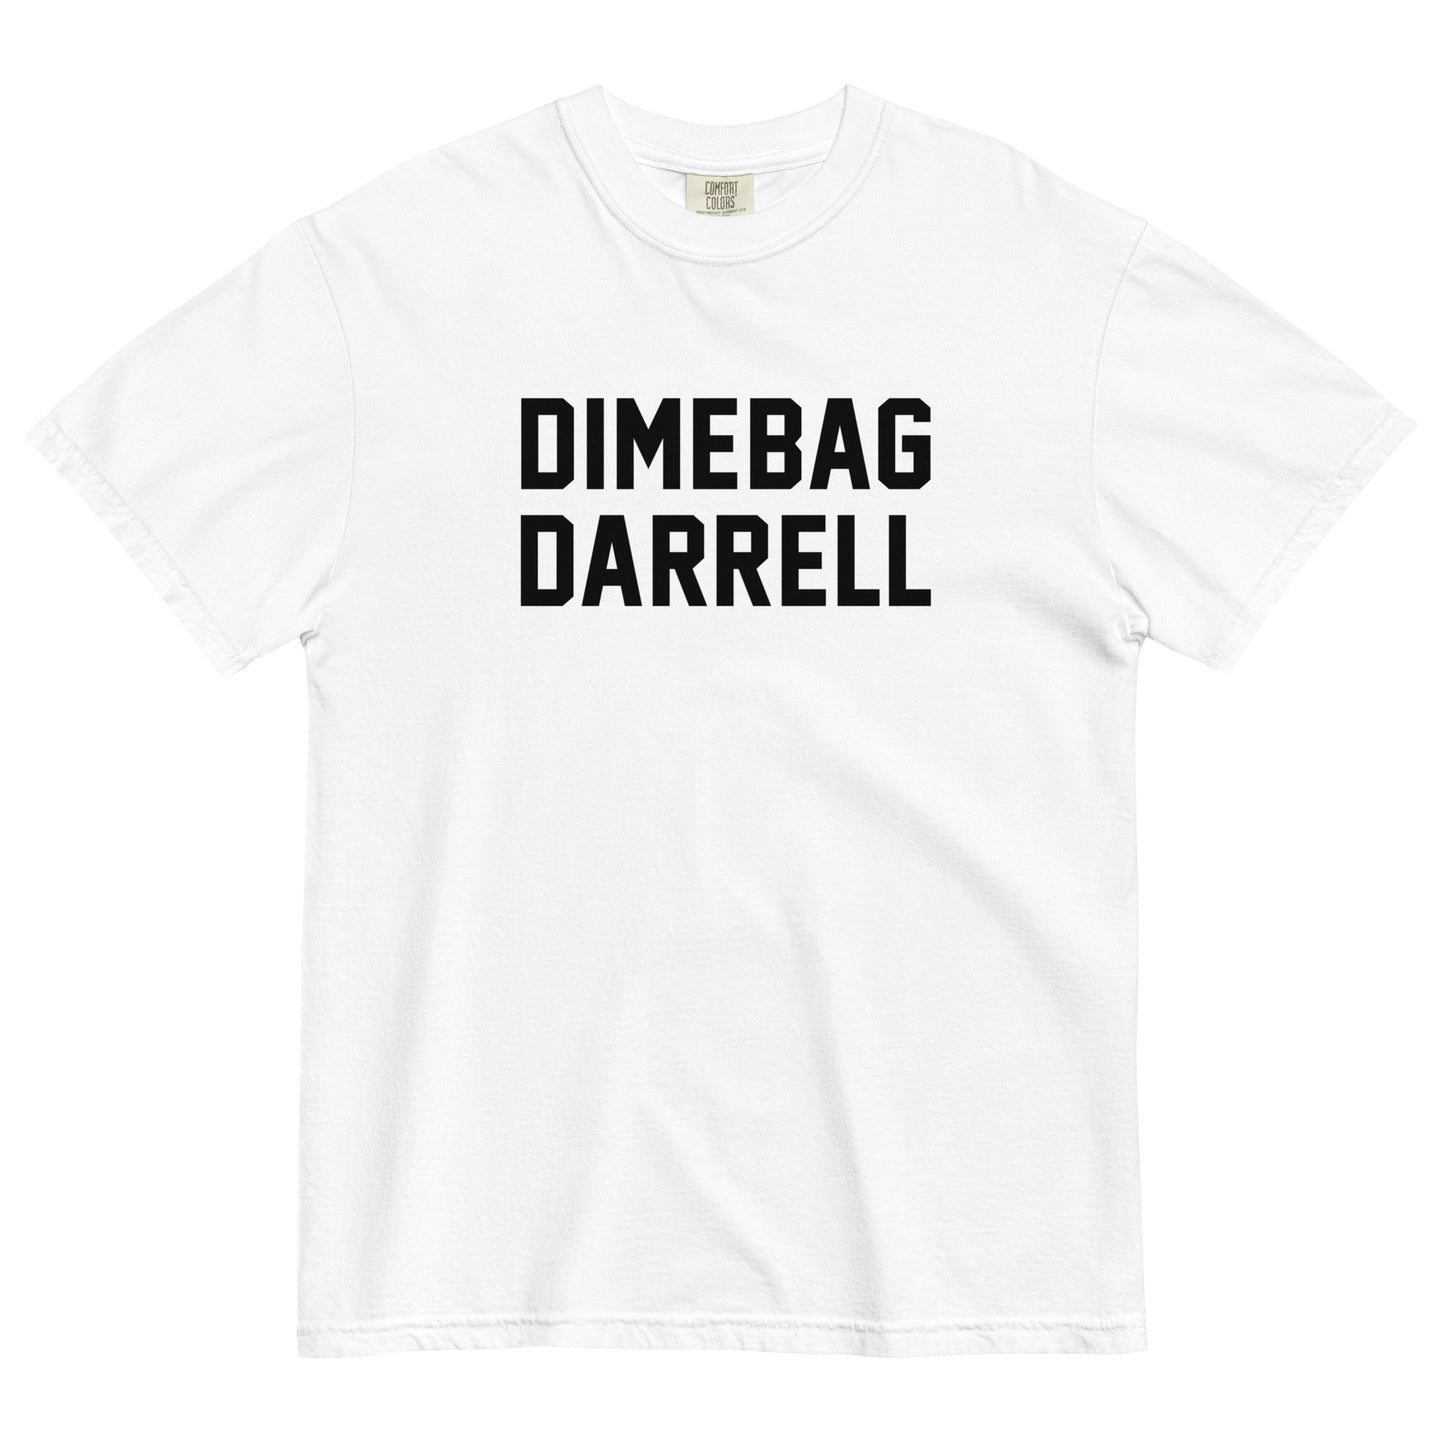 DIMEBAG DARRELL